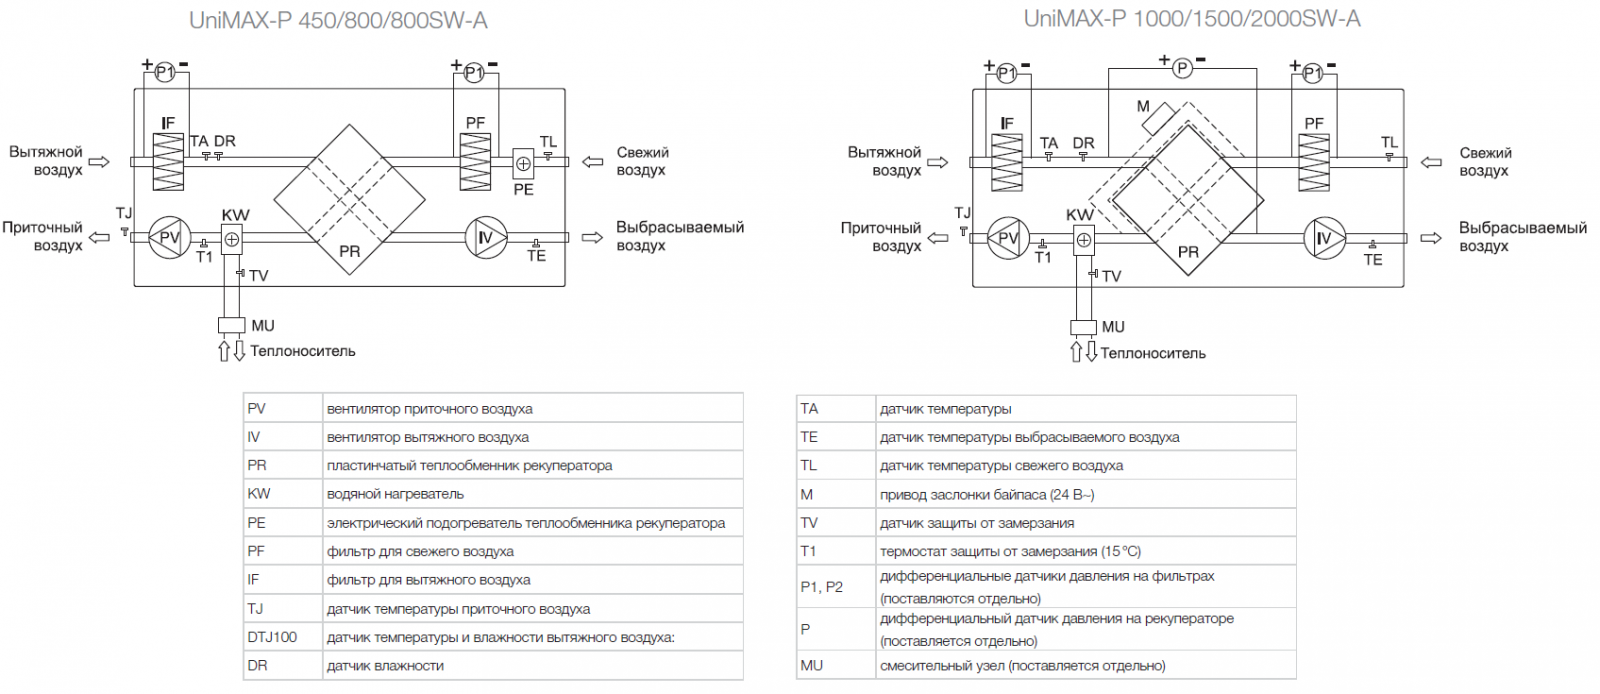 Принципиальная схема установки Shuft Unimax-P SW